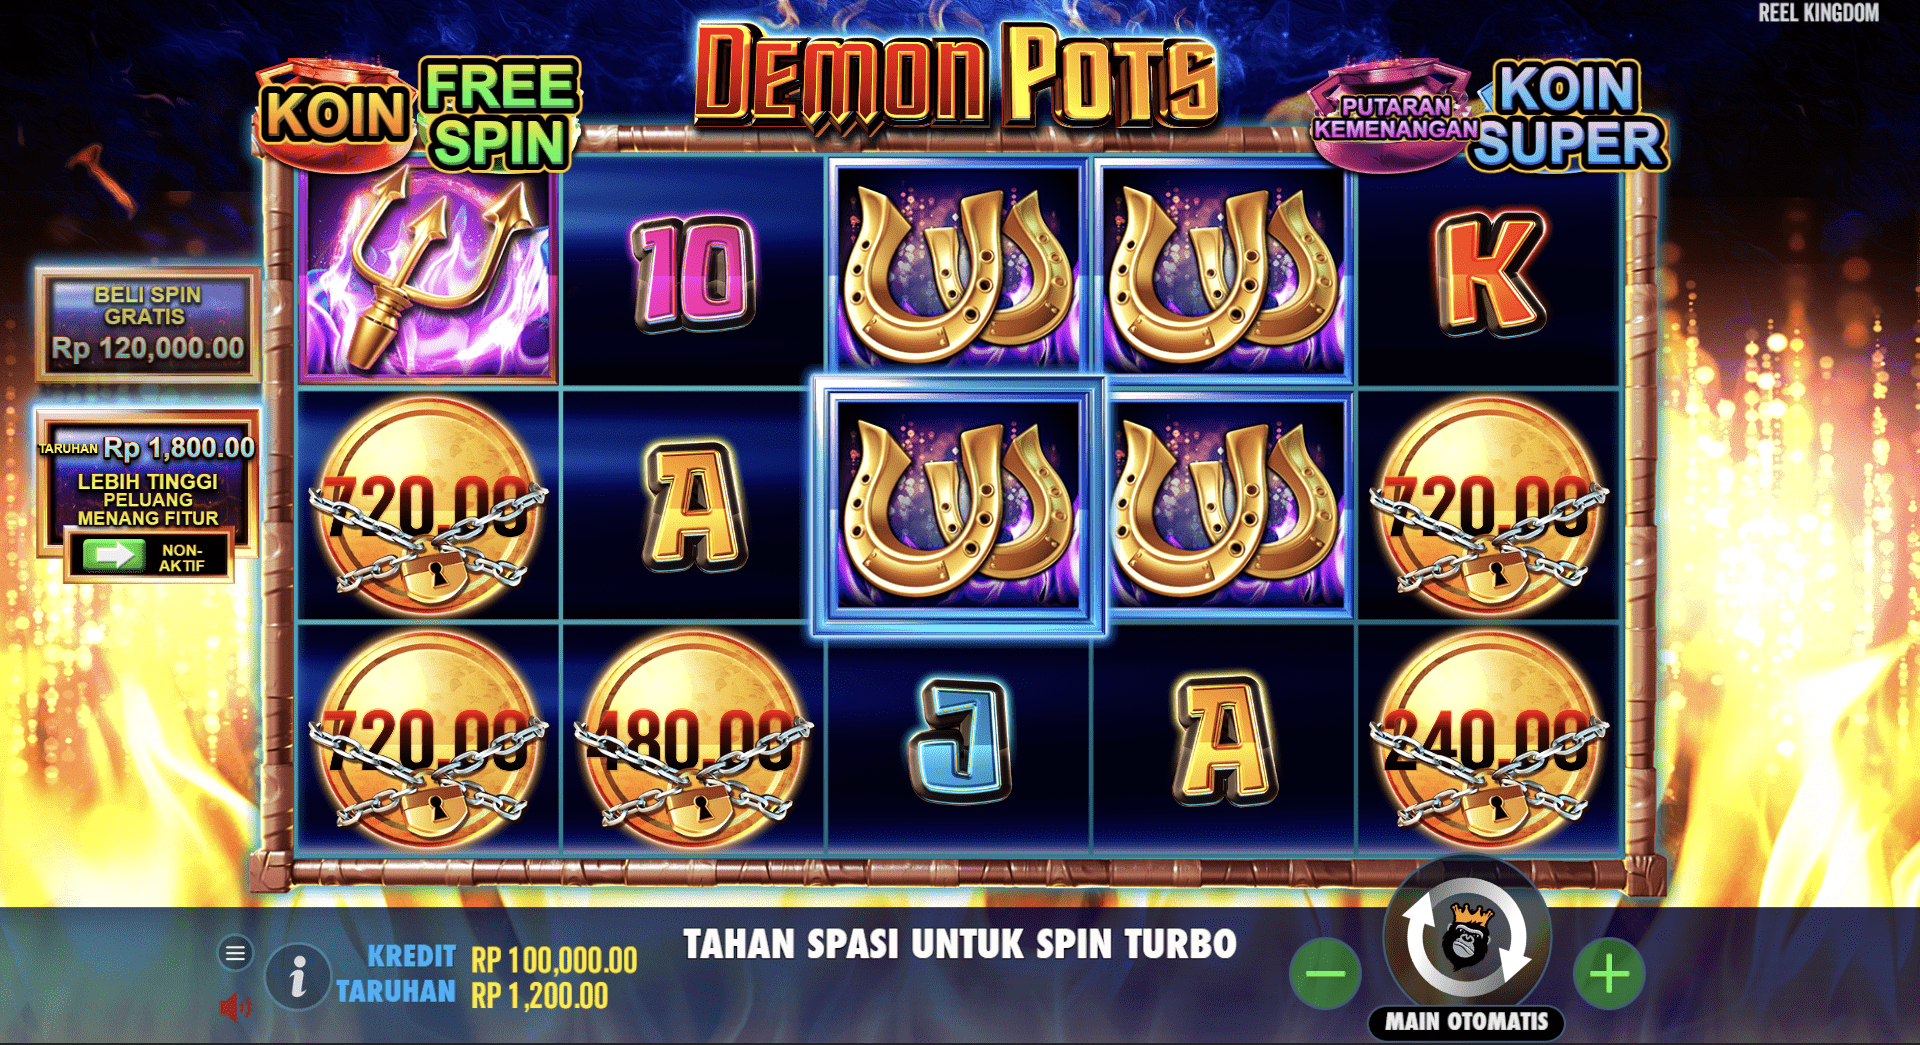 Demo Slot Demon Pots